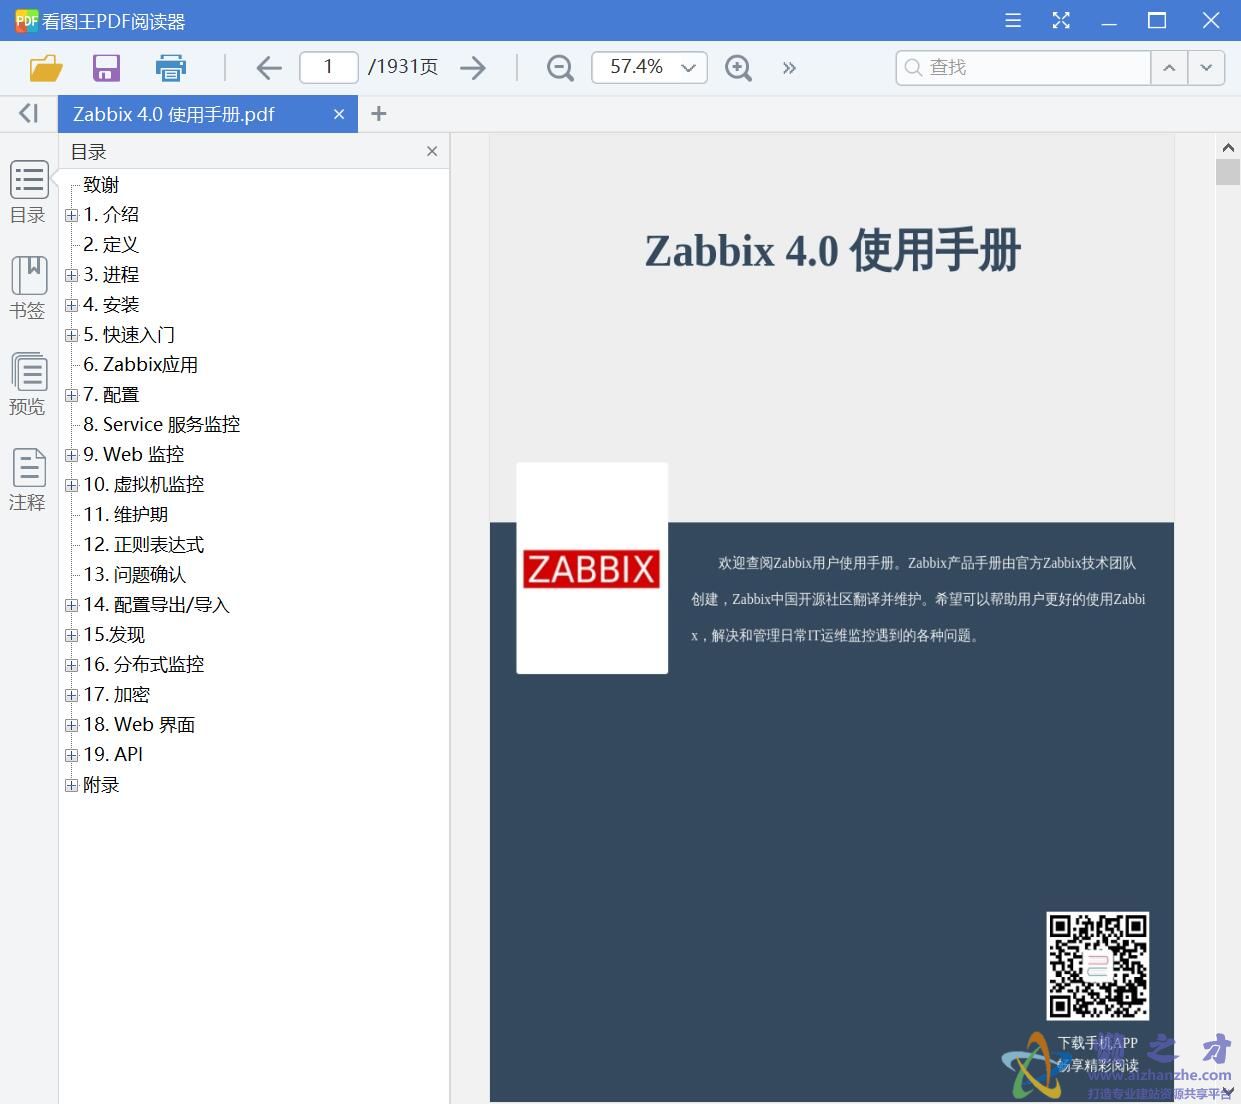 Zabbix 4.0 使用手册[PDF][23.18MB]